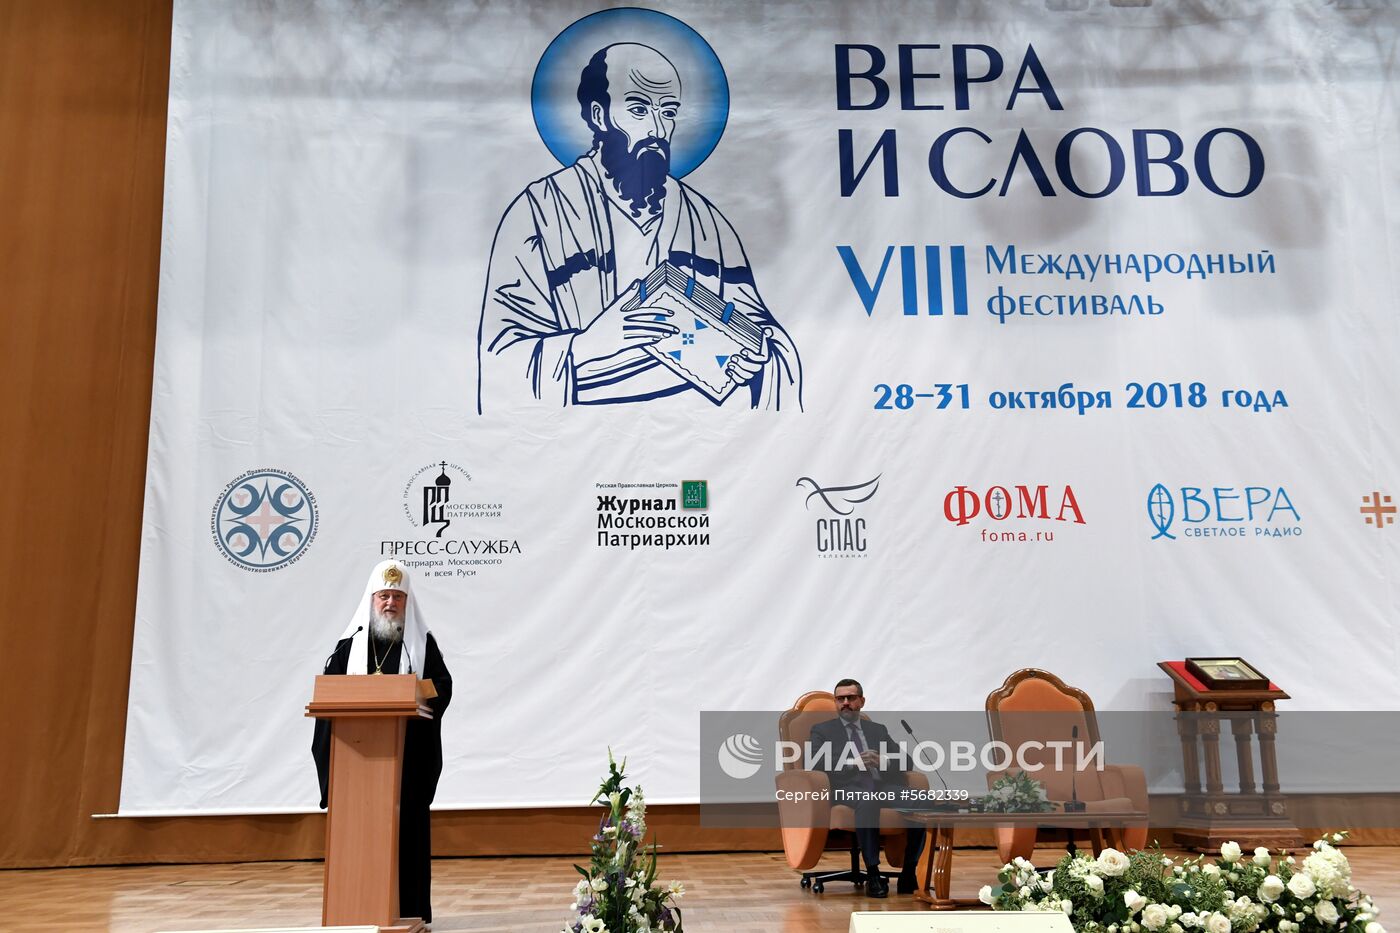 VIII Международный фестиваль православных СМИ "Вера и слово"